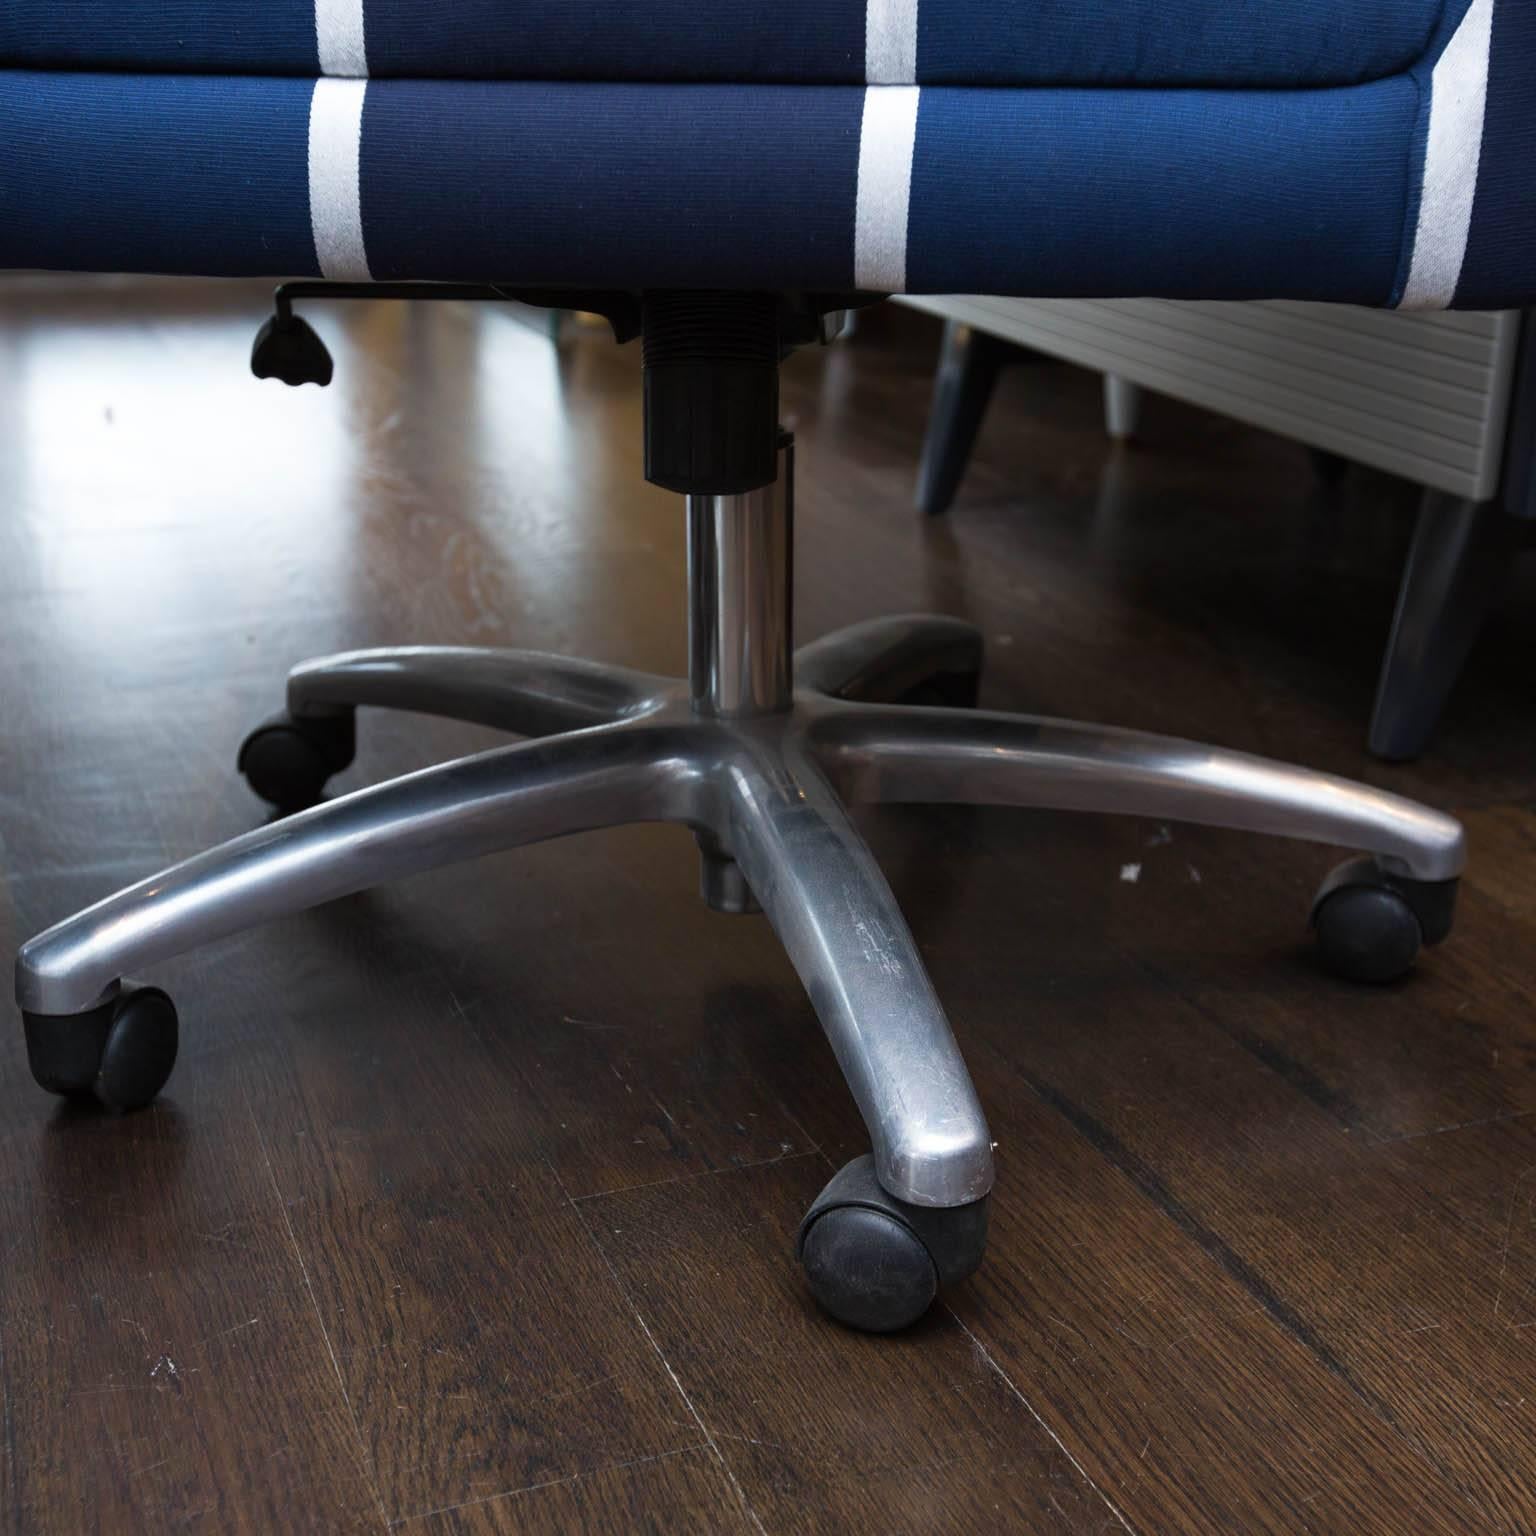 Modern Upholstered Swivel Office Chair